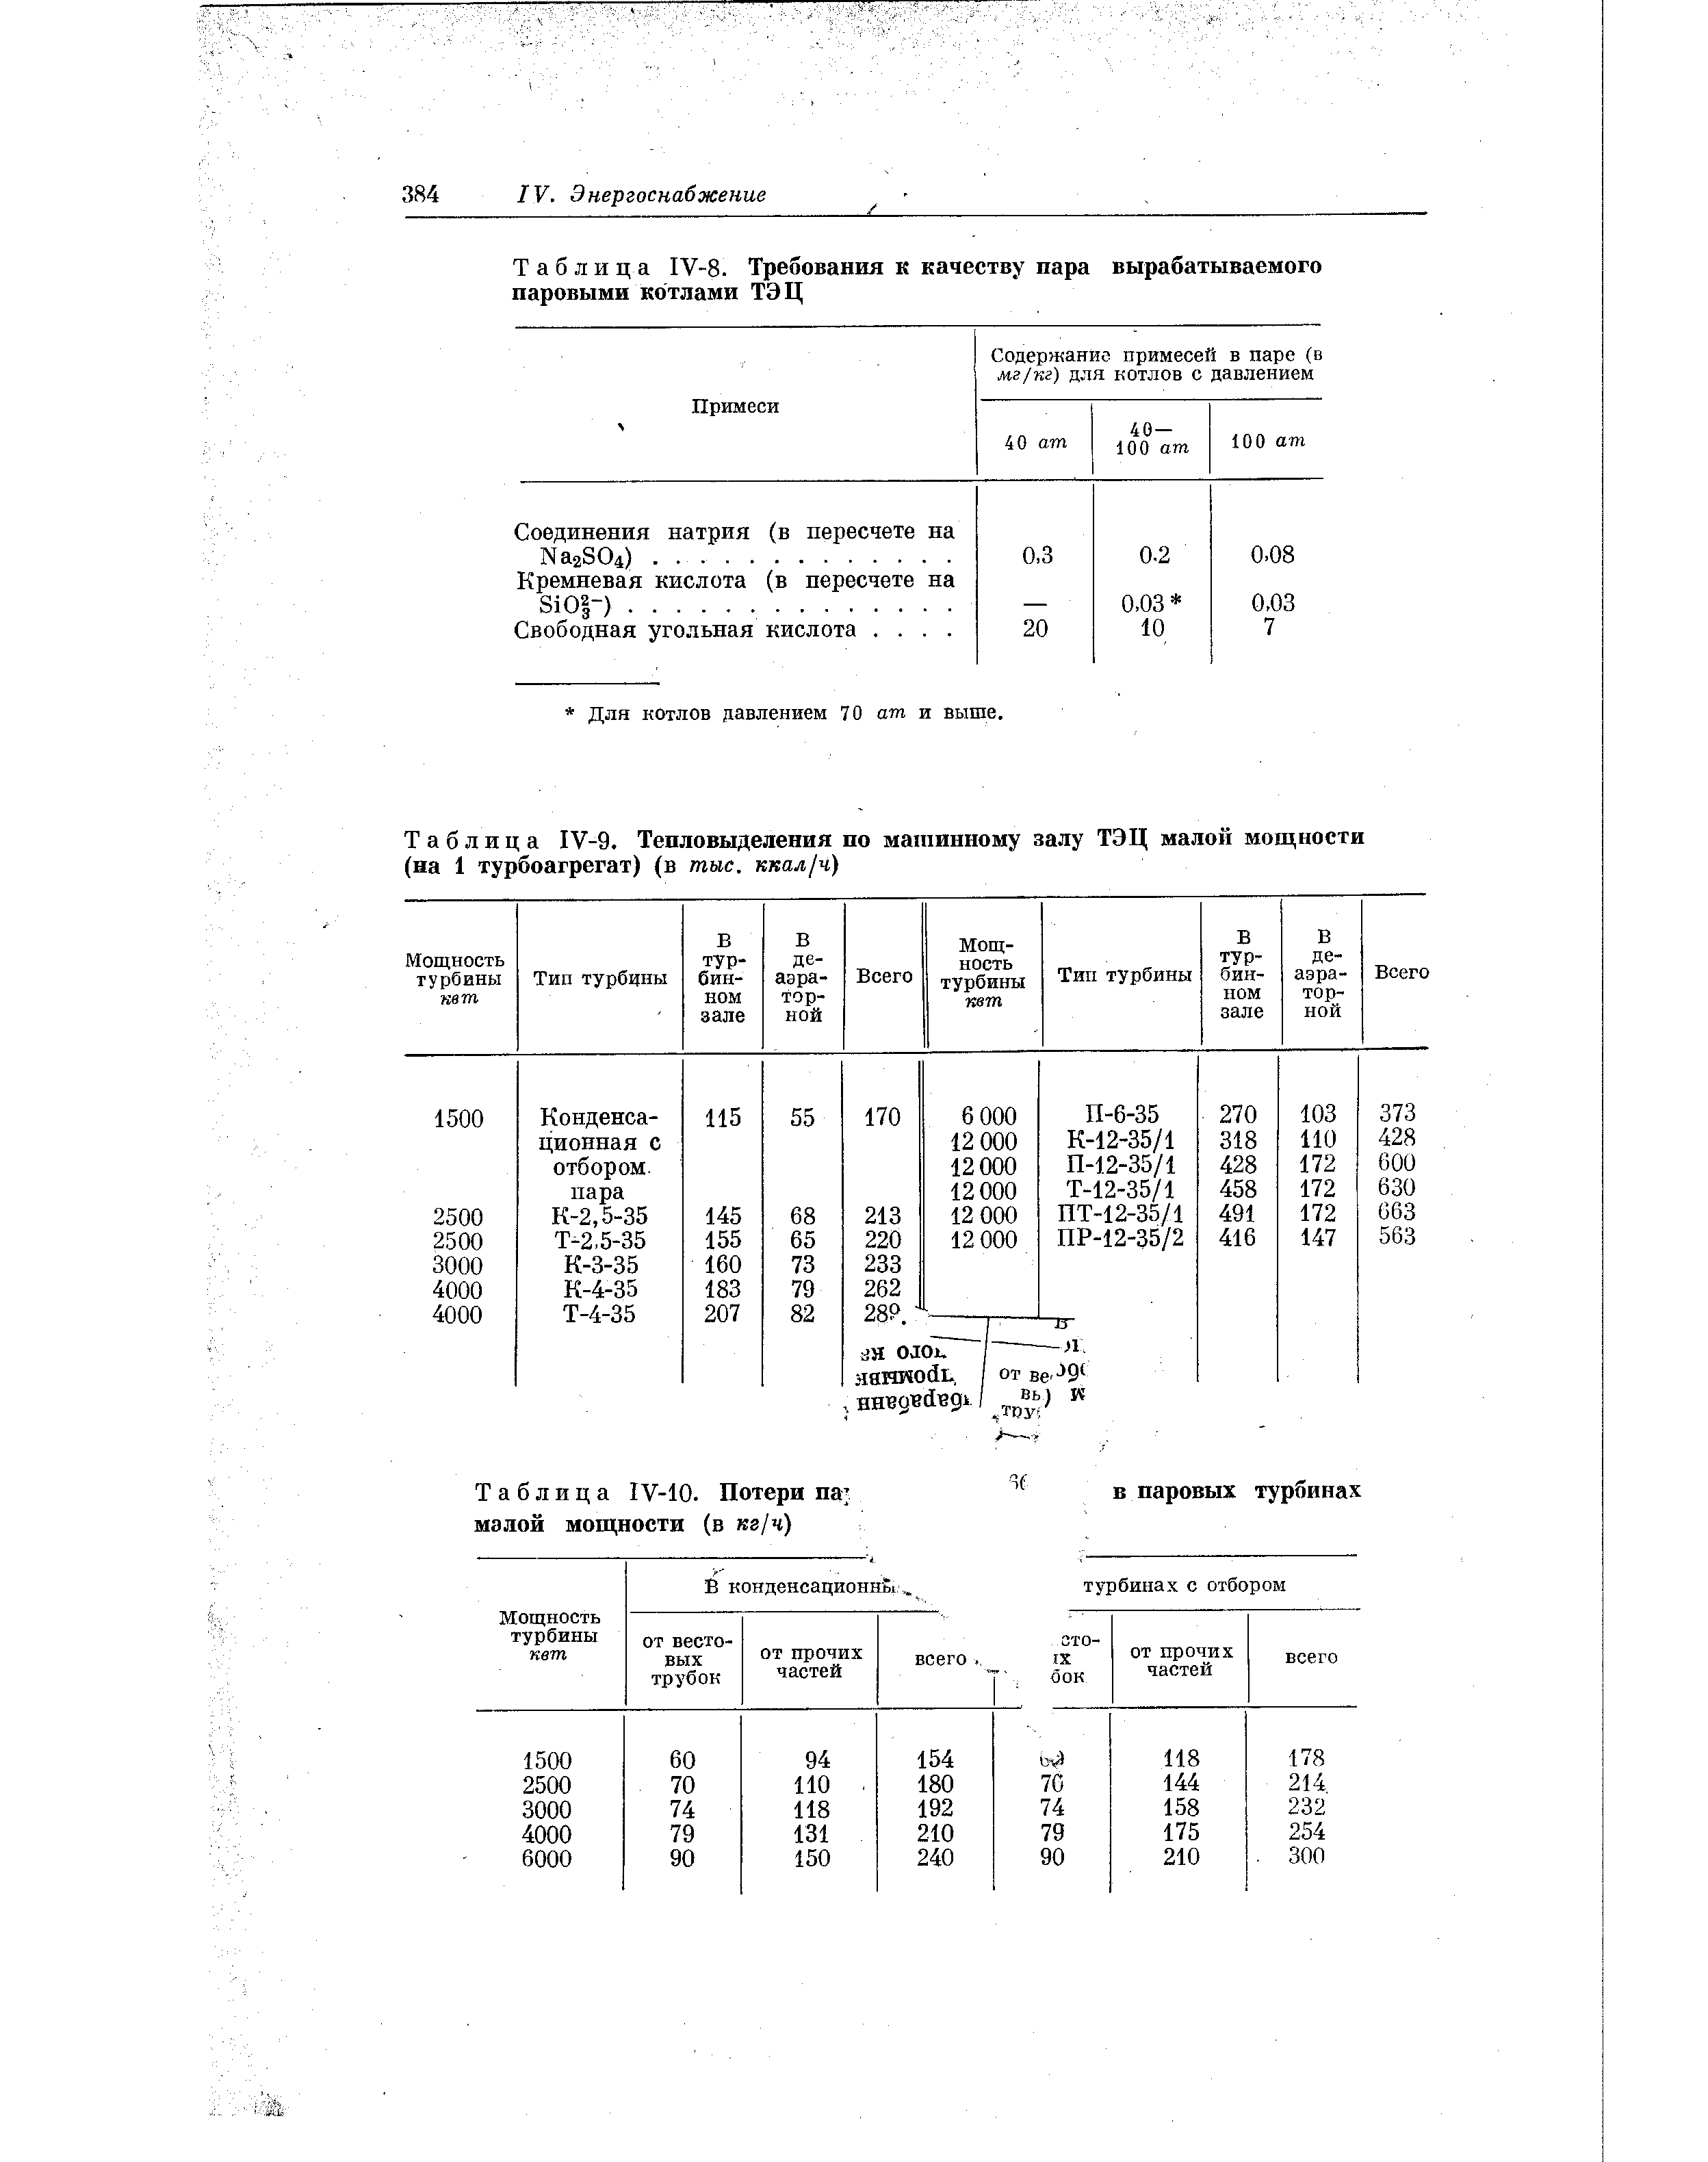 Таблица 1У-8. Требования к <a href="/info/629907">качеству пара</a> вырабатываемого паровыми котлами ТЭЦ
